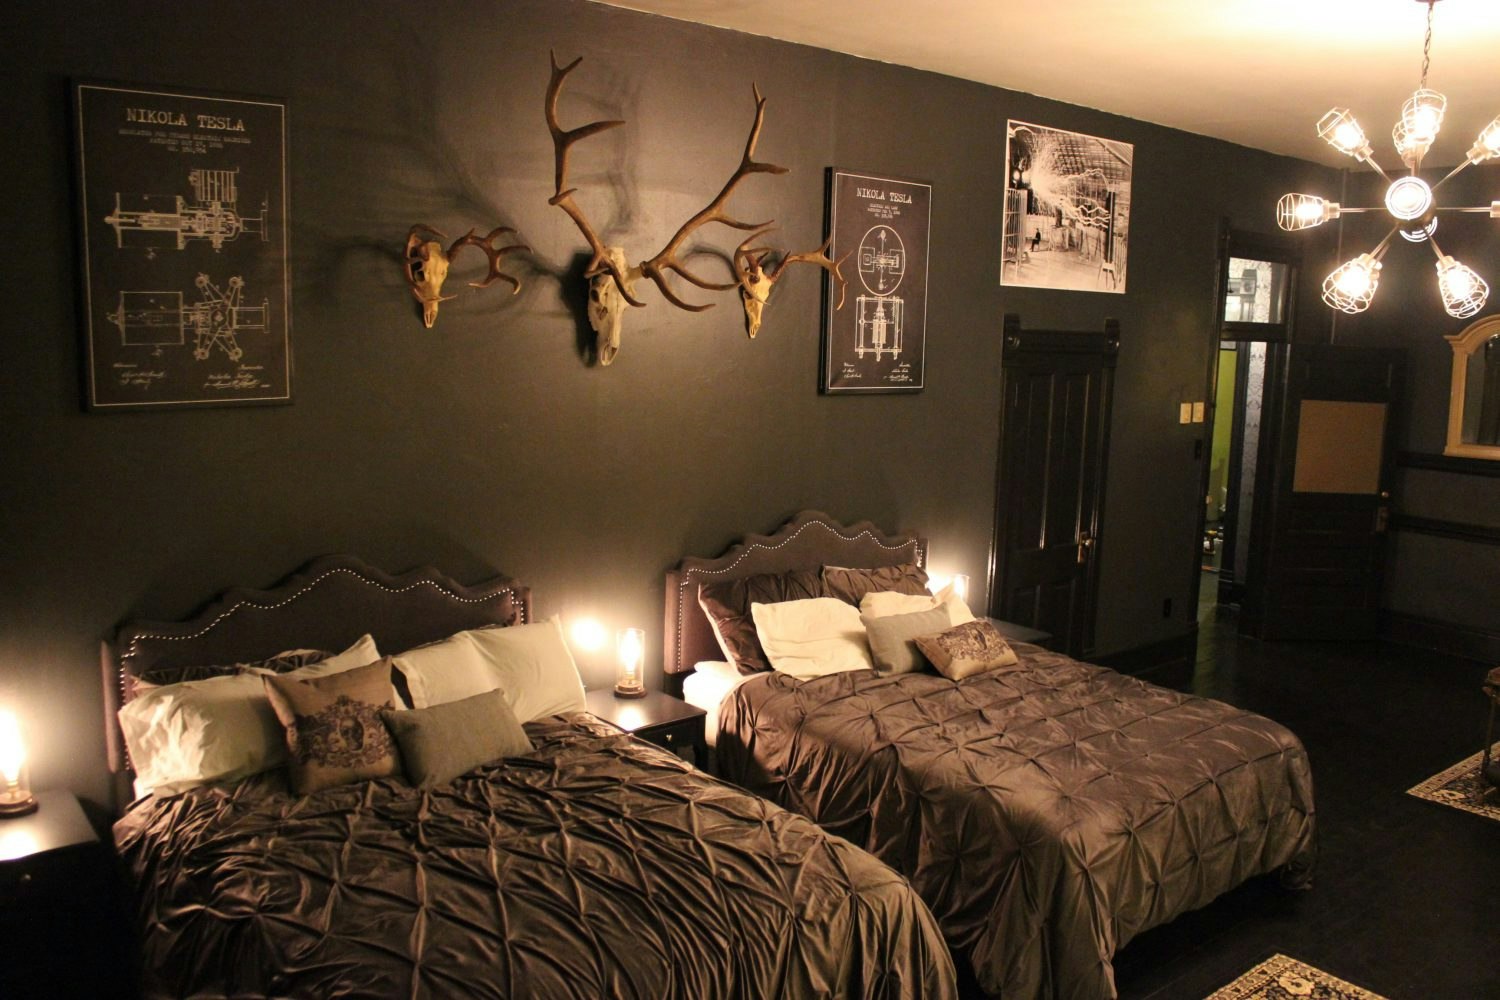 A bedroom at The Black Monarch Hotel in Colorado.